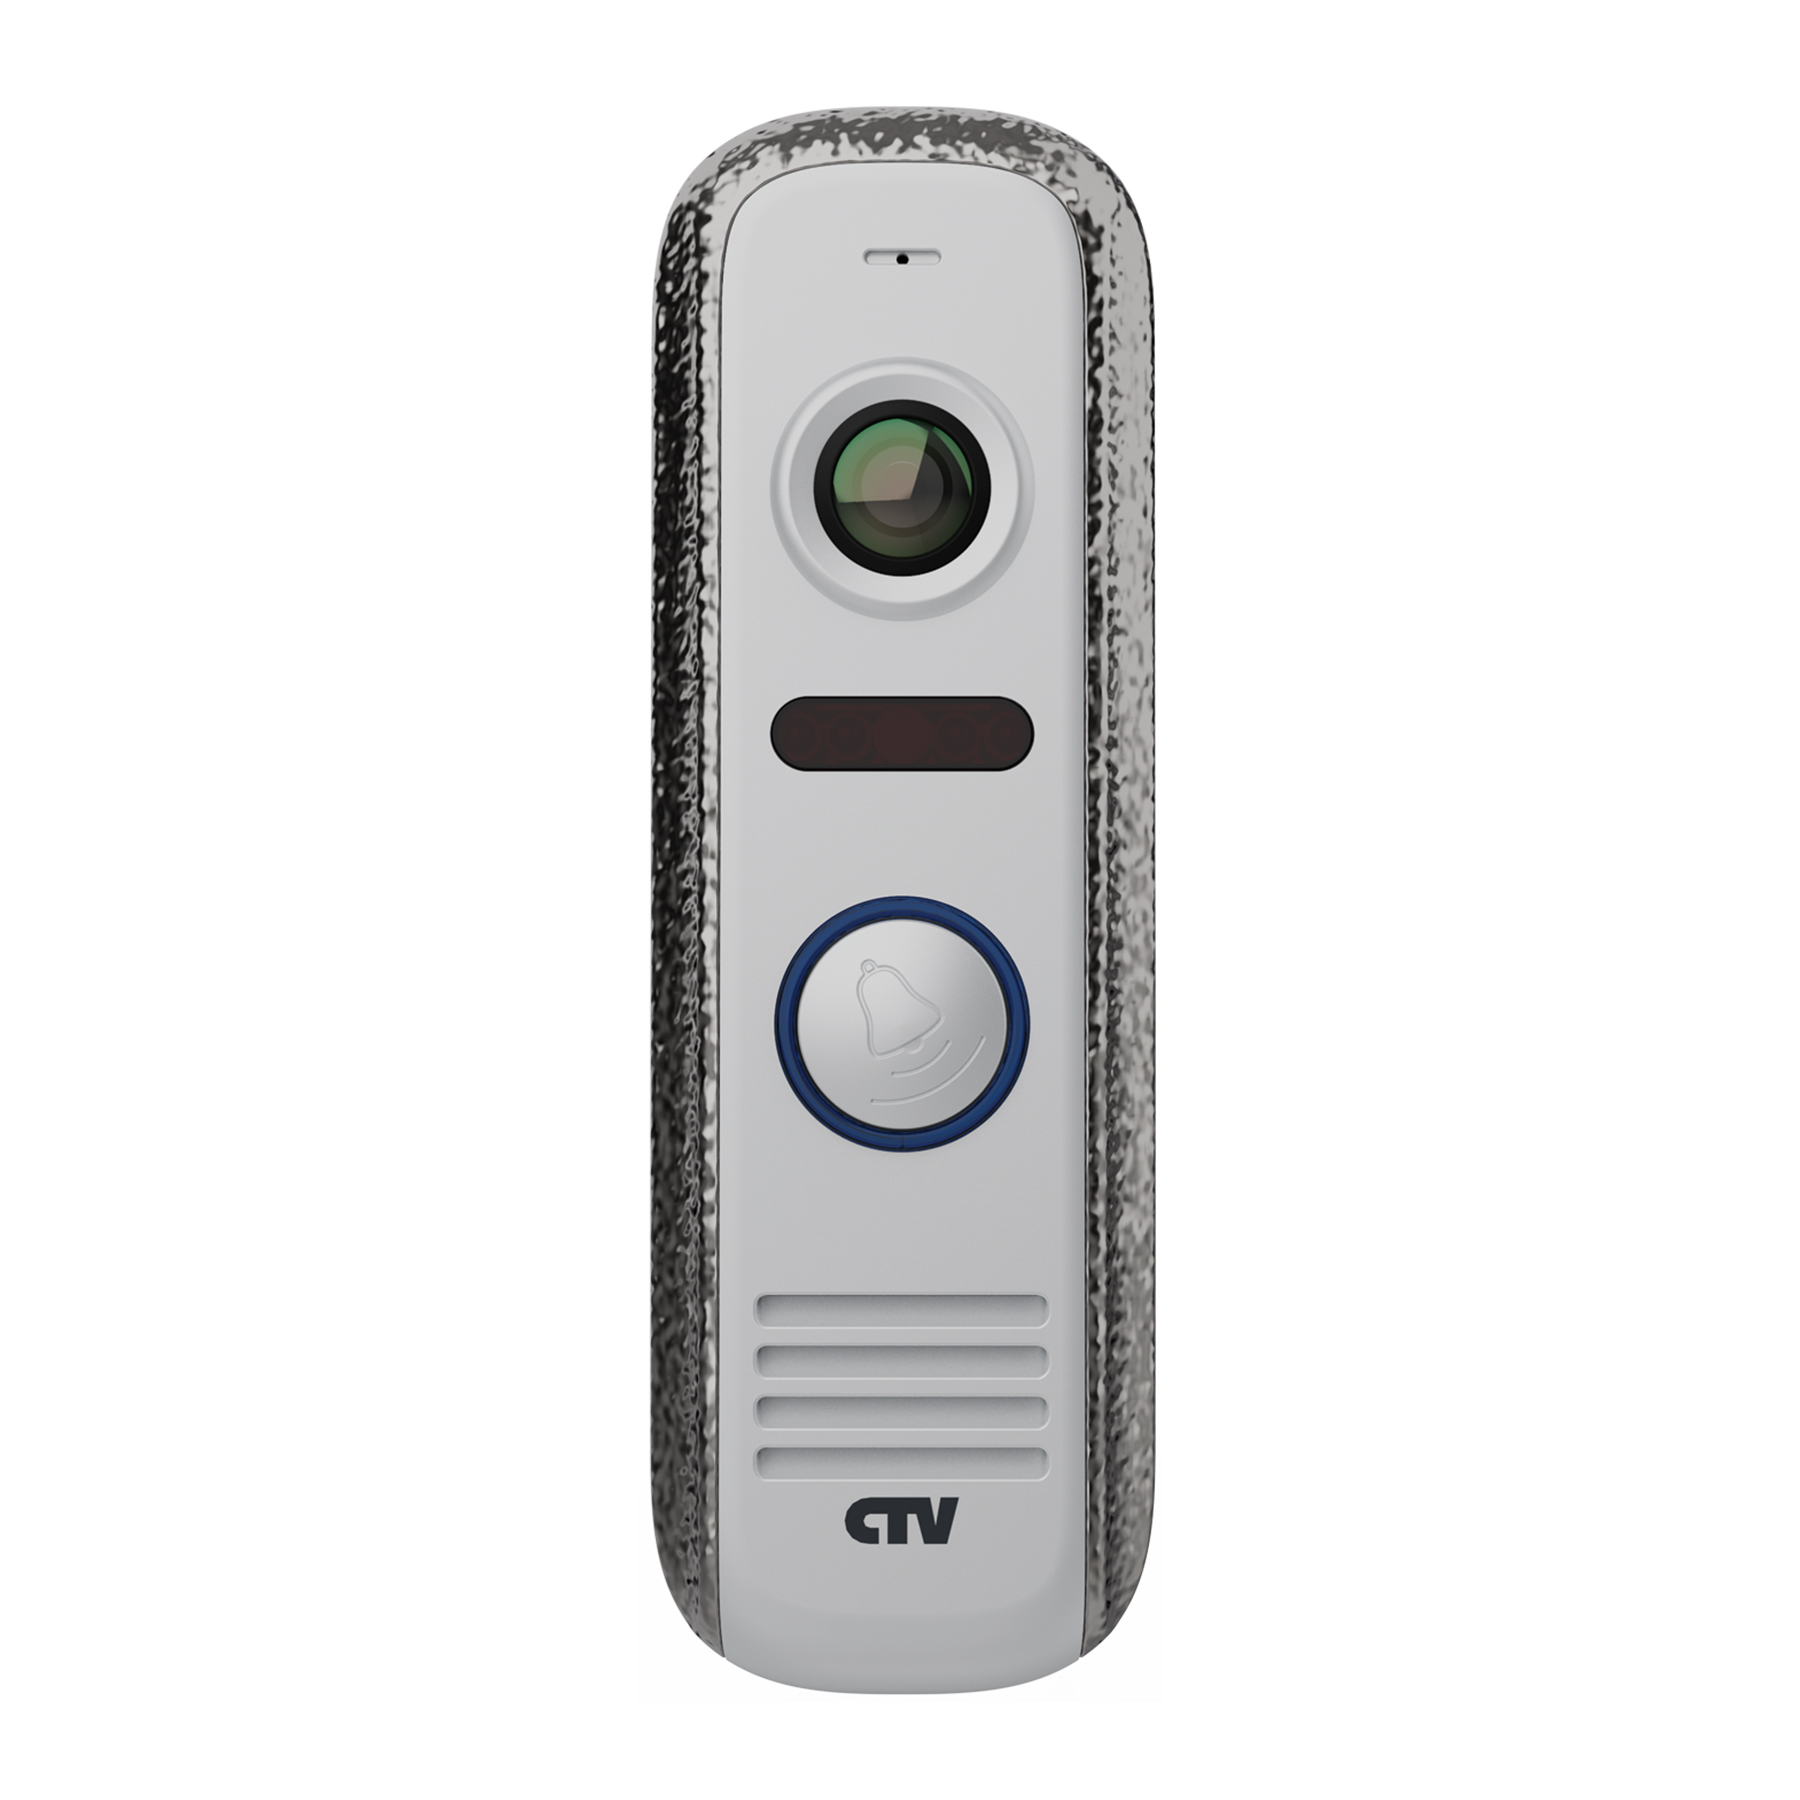 Купить вызывная панель "ctv" для видеодомофонов ctv-d4000s sа серебряный антик (формат ahd, режим день/ночь, ик подсветка, угол обзора 150° объектив fish eye) | КилоВатт